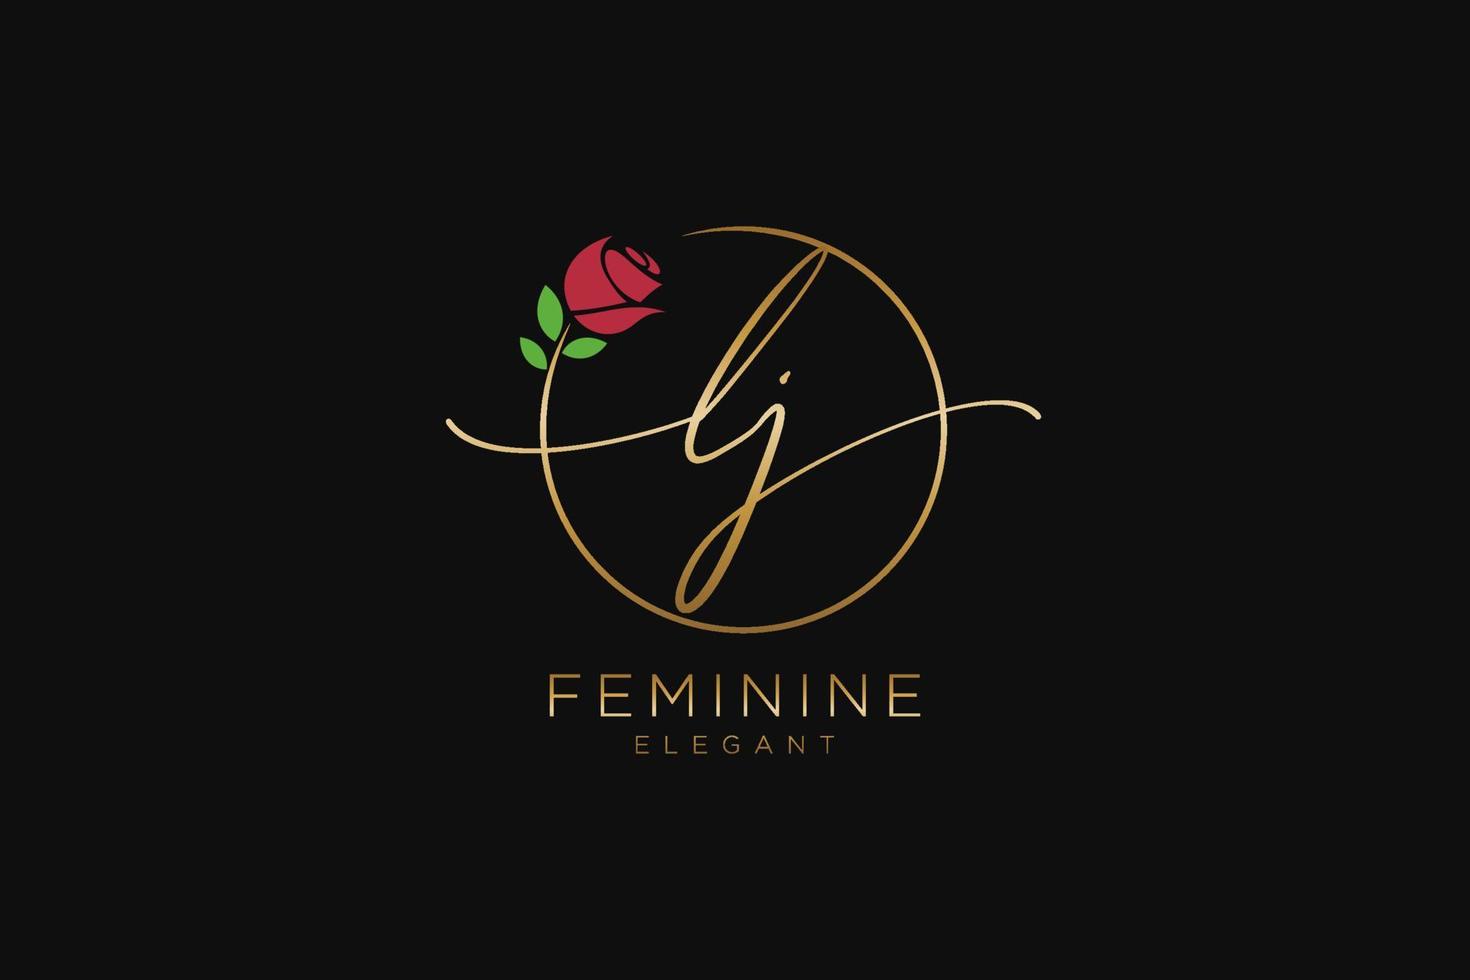 monogramme de beauté du logo féminin initial lj et design élégant du logo, logo manuscrit de la signature initiale, mariage, mode, floral et botanique avec modèle créatif. vecteur